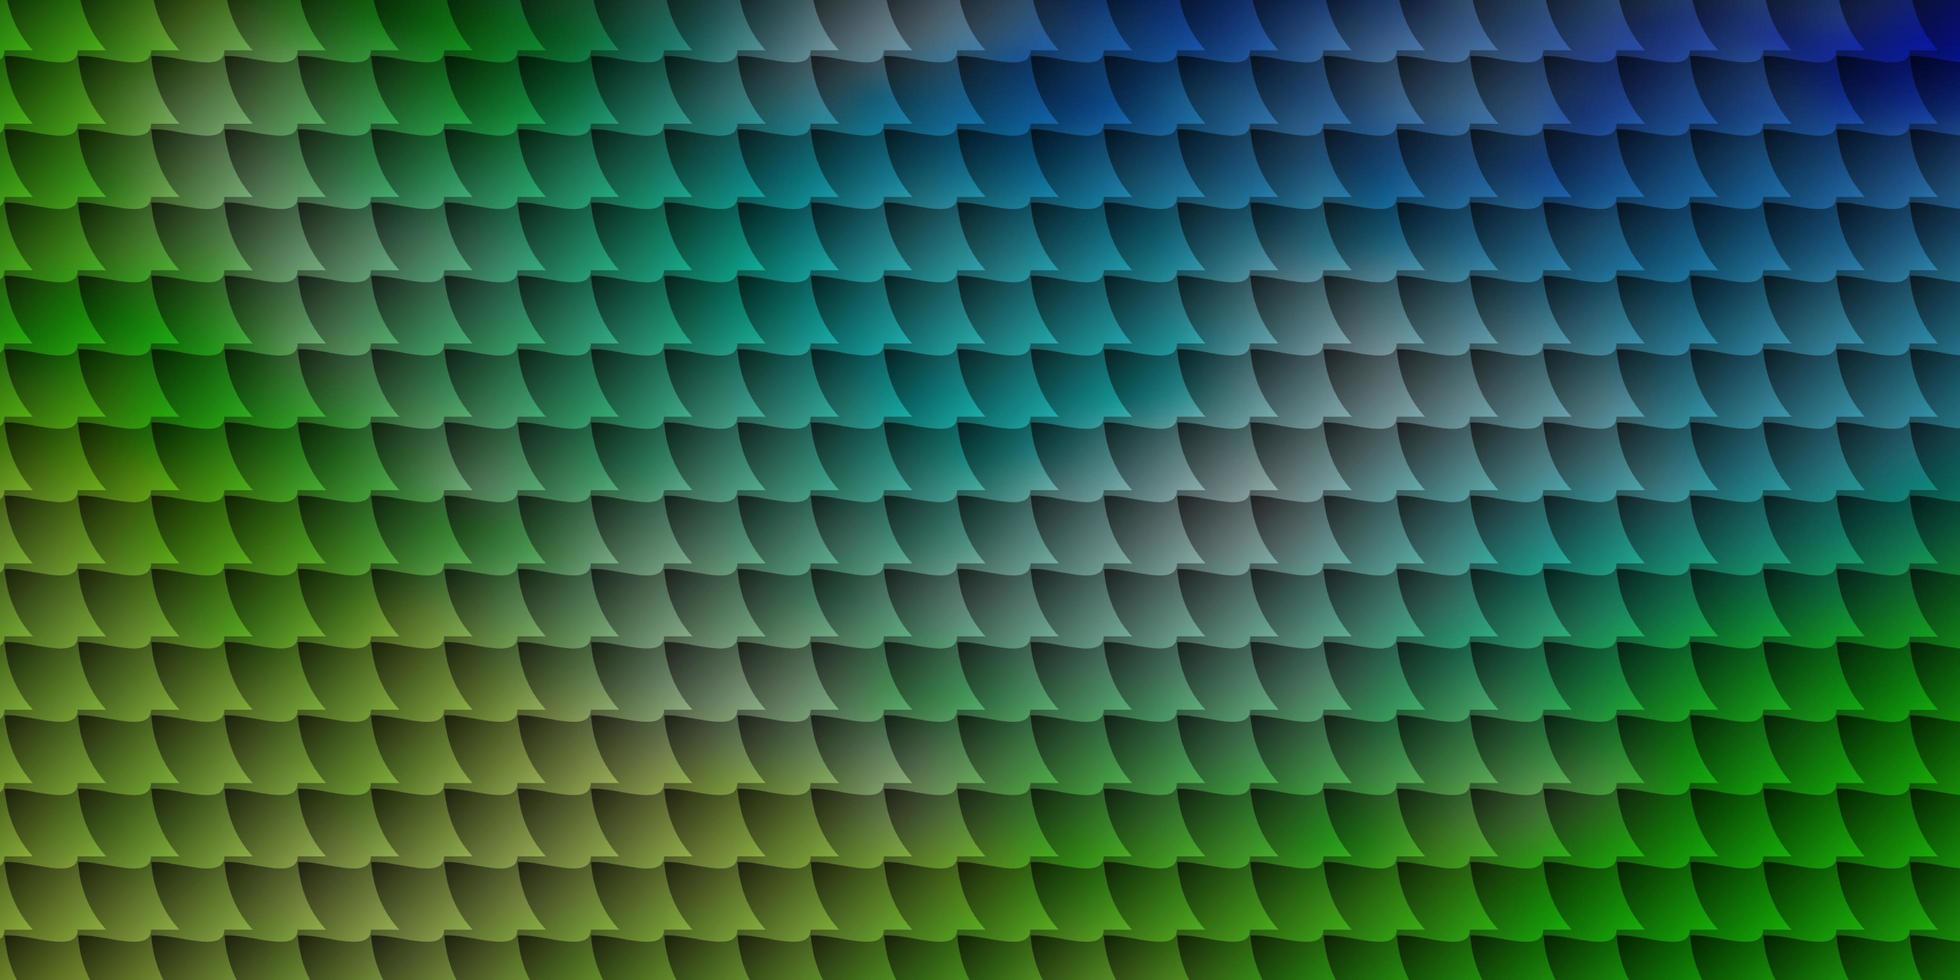 fundo vector azul e verde claro com retângulos.